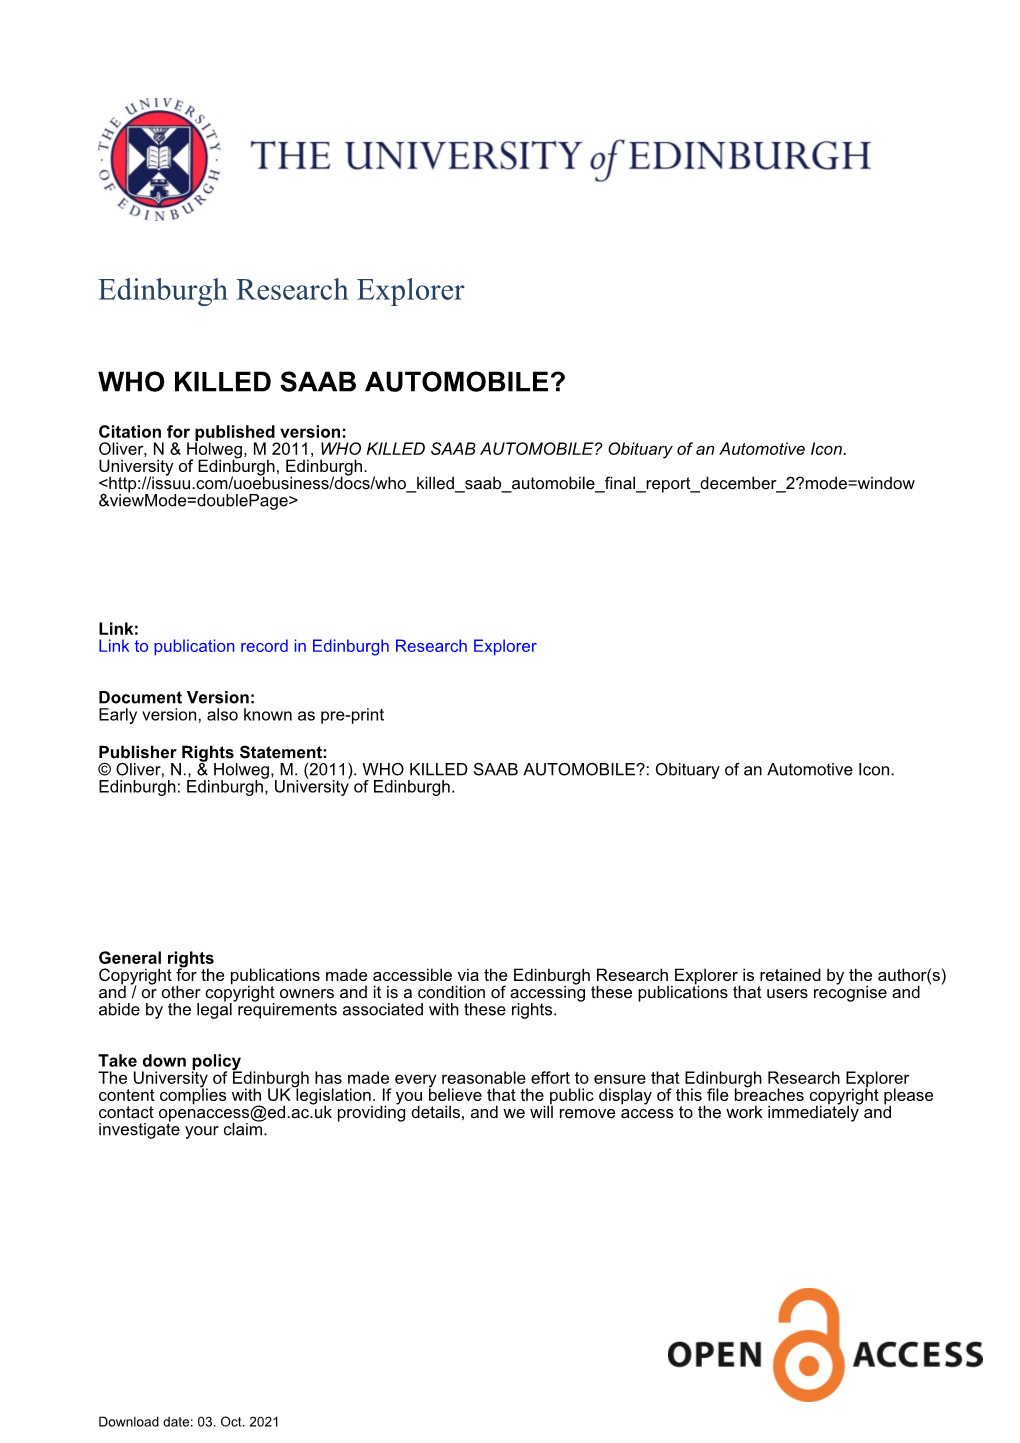 WHO KILLED SAAB AUTOMOBILE?: Obituary of an Automotive Icon